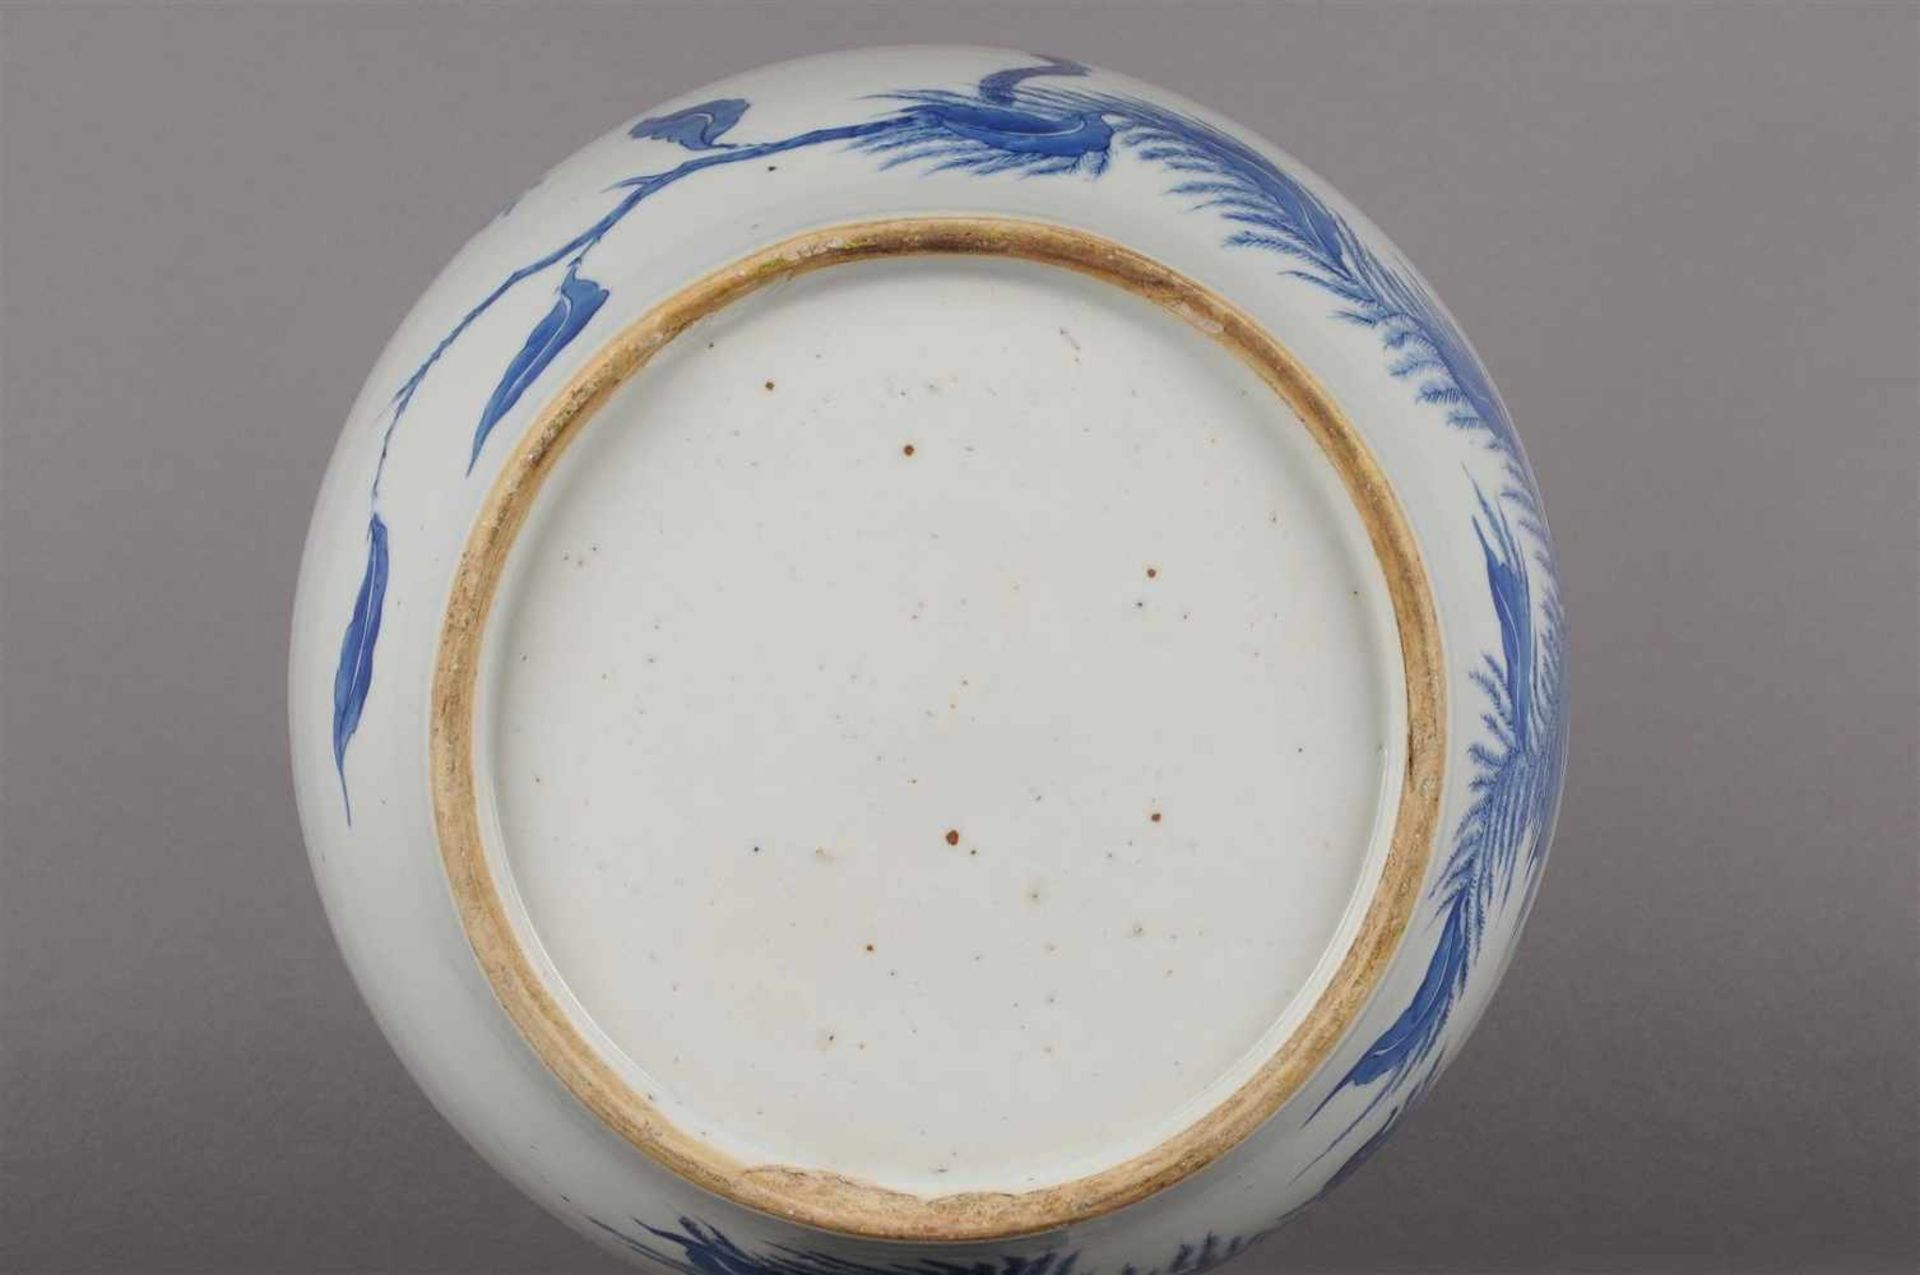 Blauw wit porseleinen vaas met decor van bloemen en vogels, niet gemerkt, China 20e eeuw. H: 25 cm. - Bild 4 aus 6